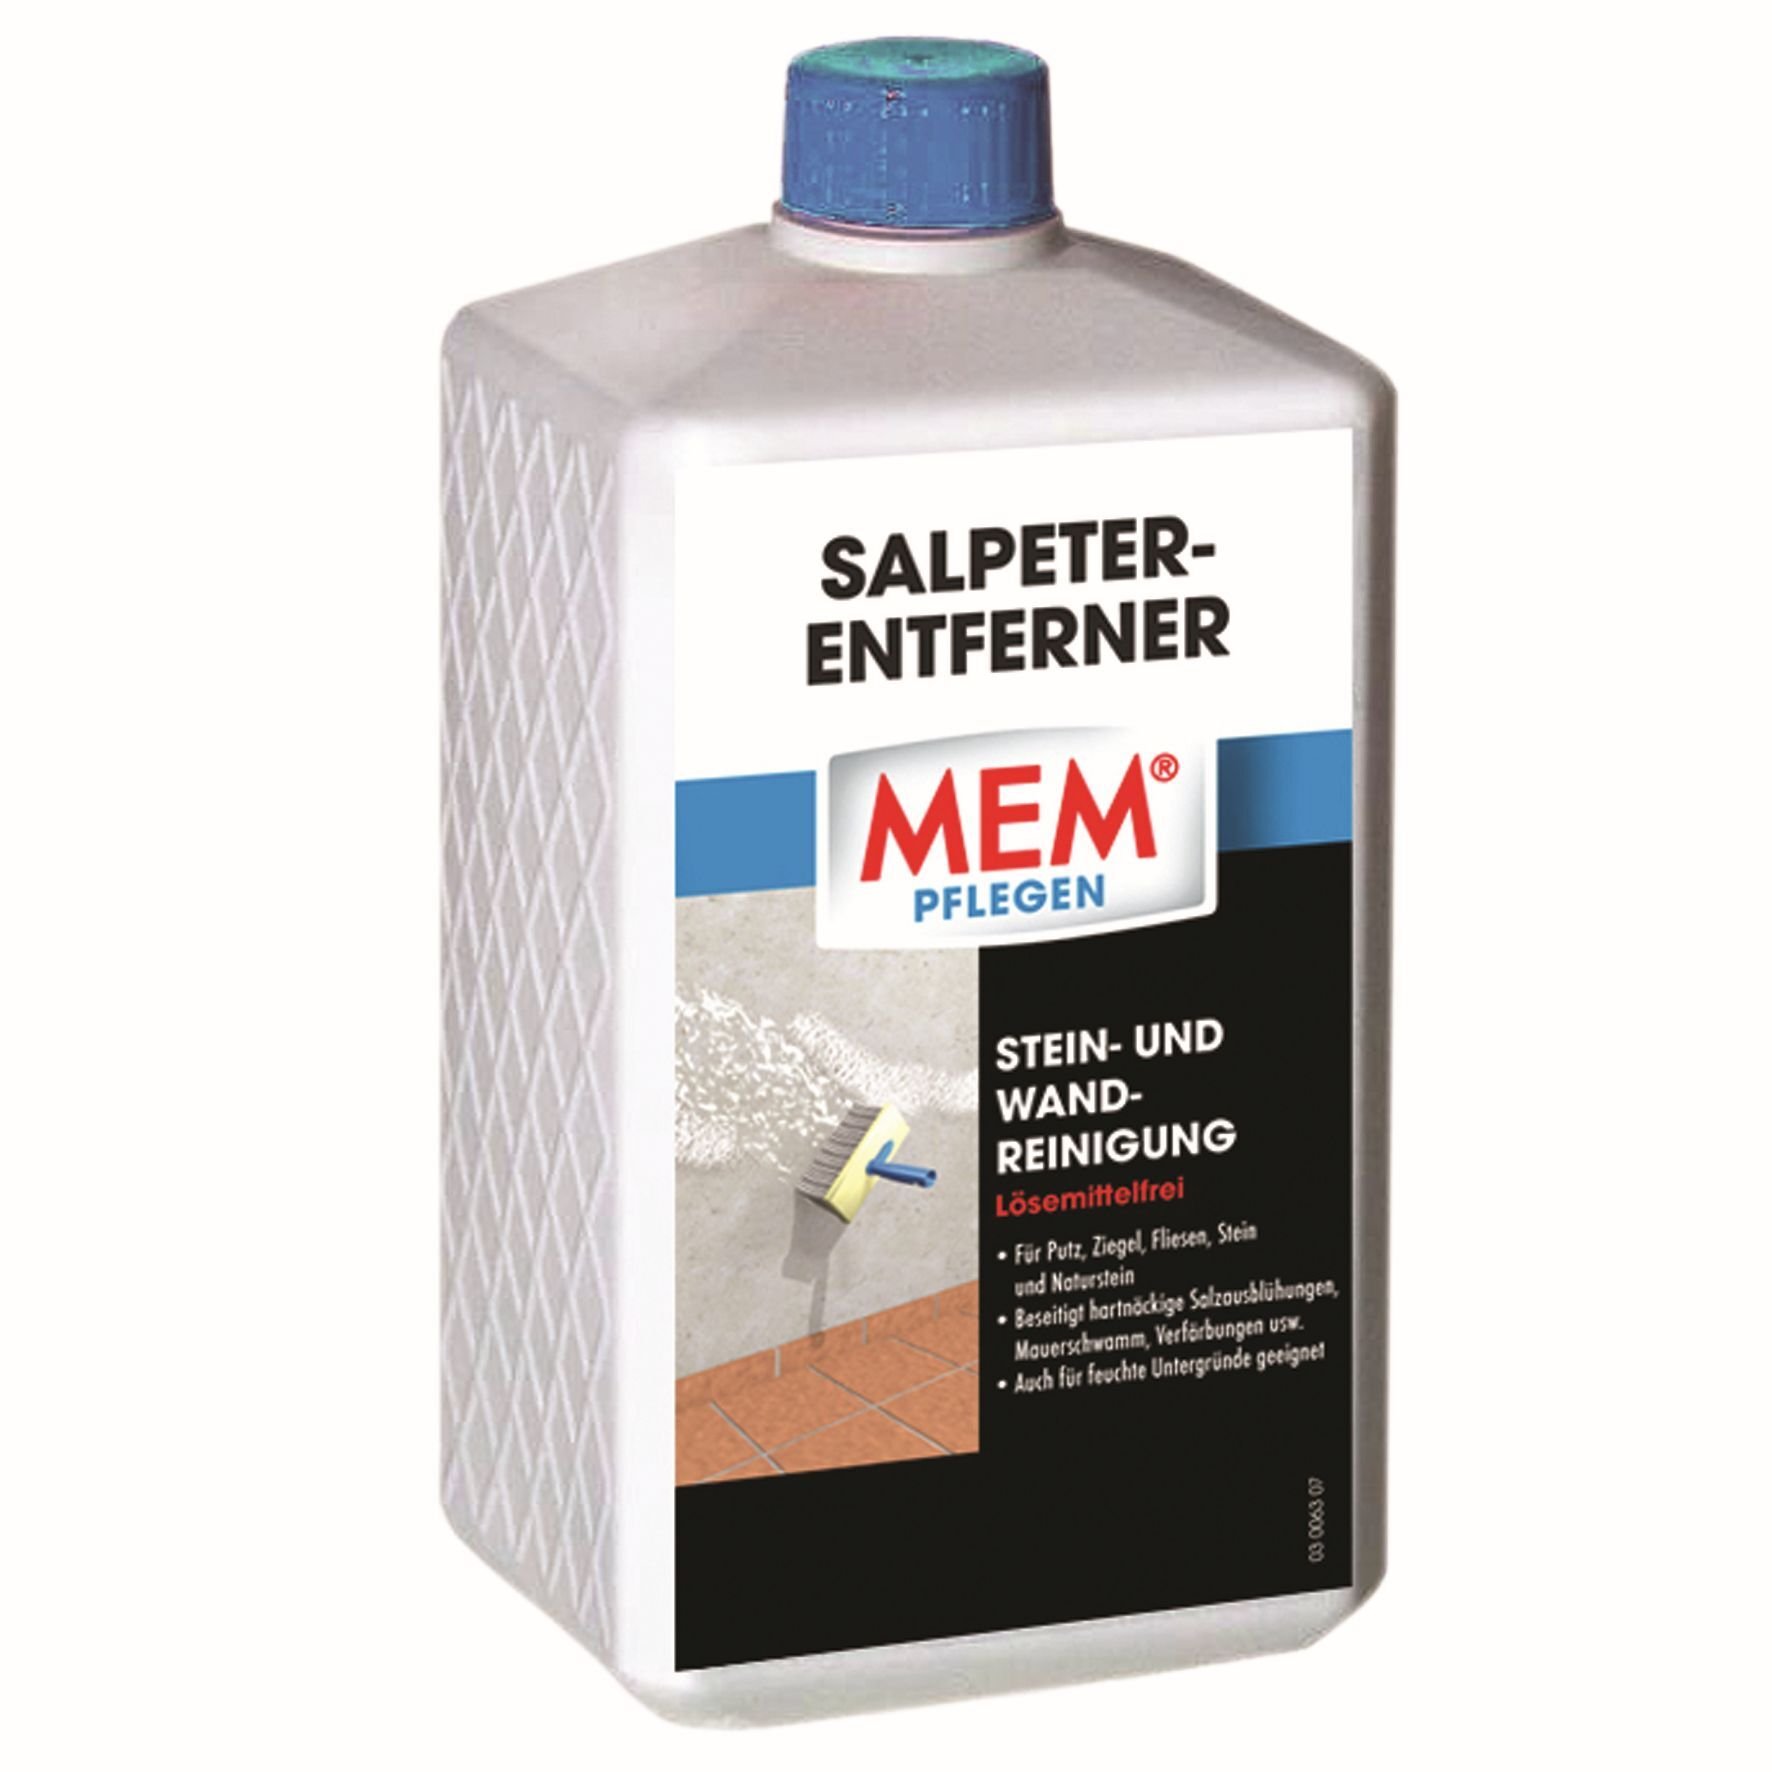 MEM Bauchemie GmbH MEM Salpeter-Entferner